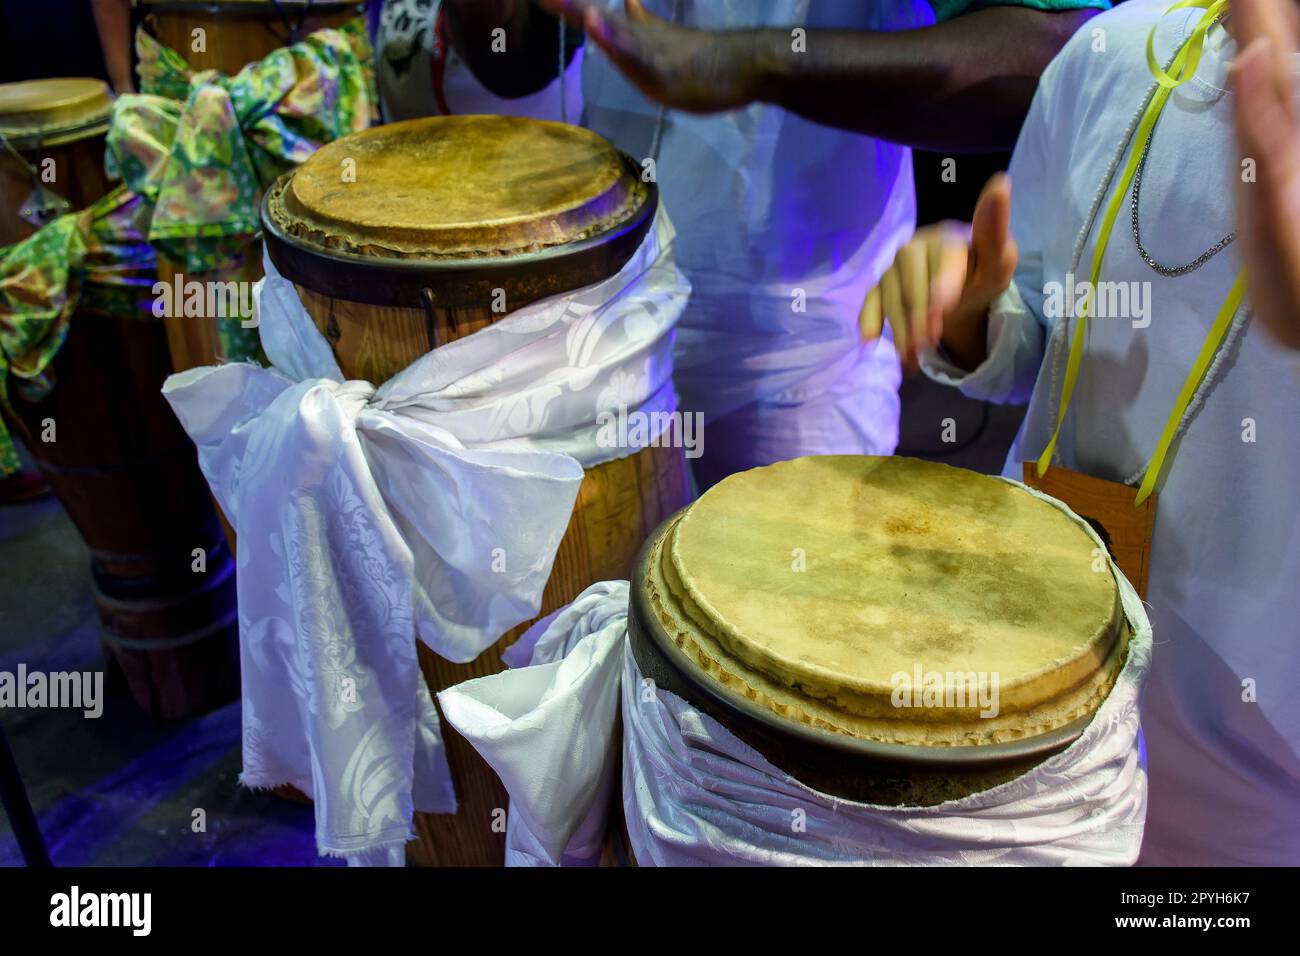 Einige Trommeln, die in Brasilien Ataque genannt werden, wurden während einer Umbanda-Zeremonie verwendet Stockfoto